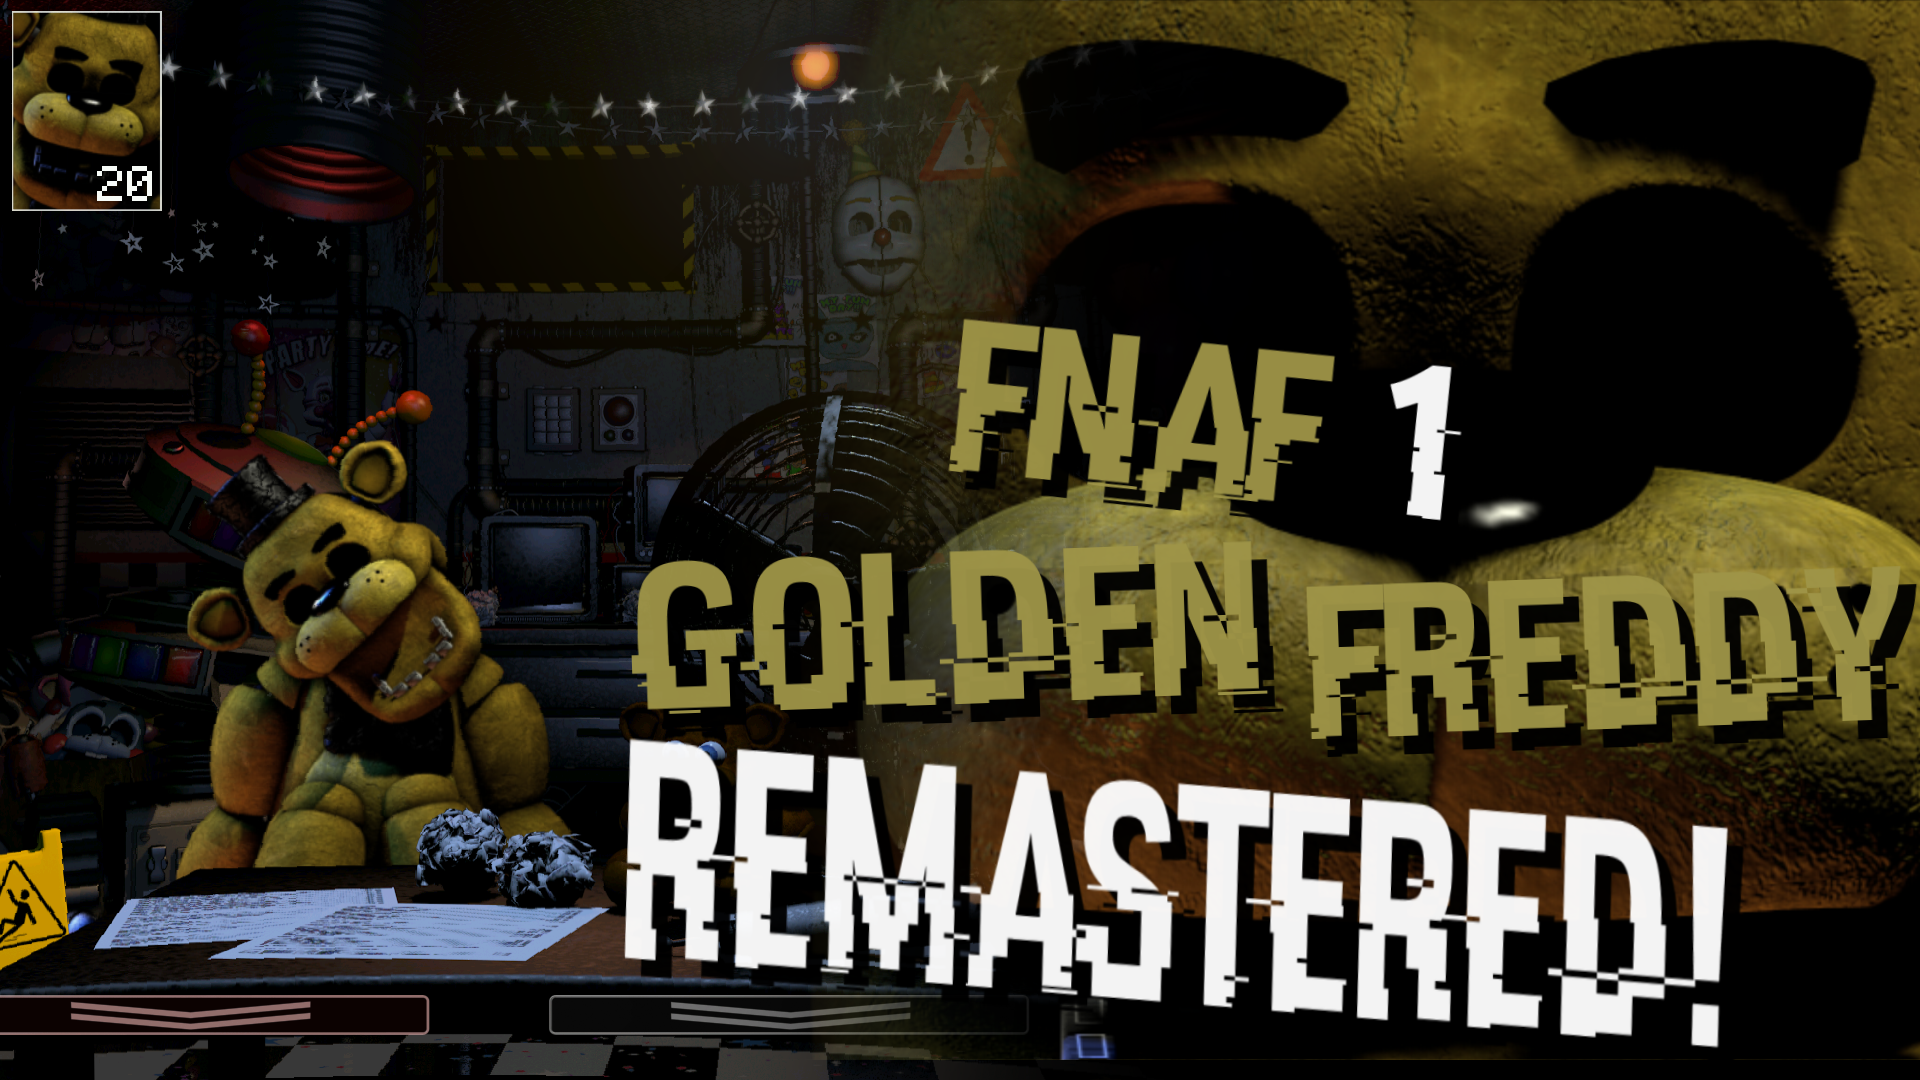 FNaF Mod] FNaF 1 Golden Freddy in UCN Remastered! by EliteRobo on DeviantArt